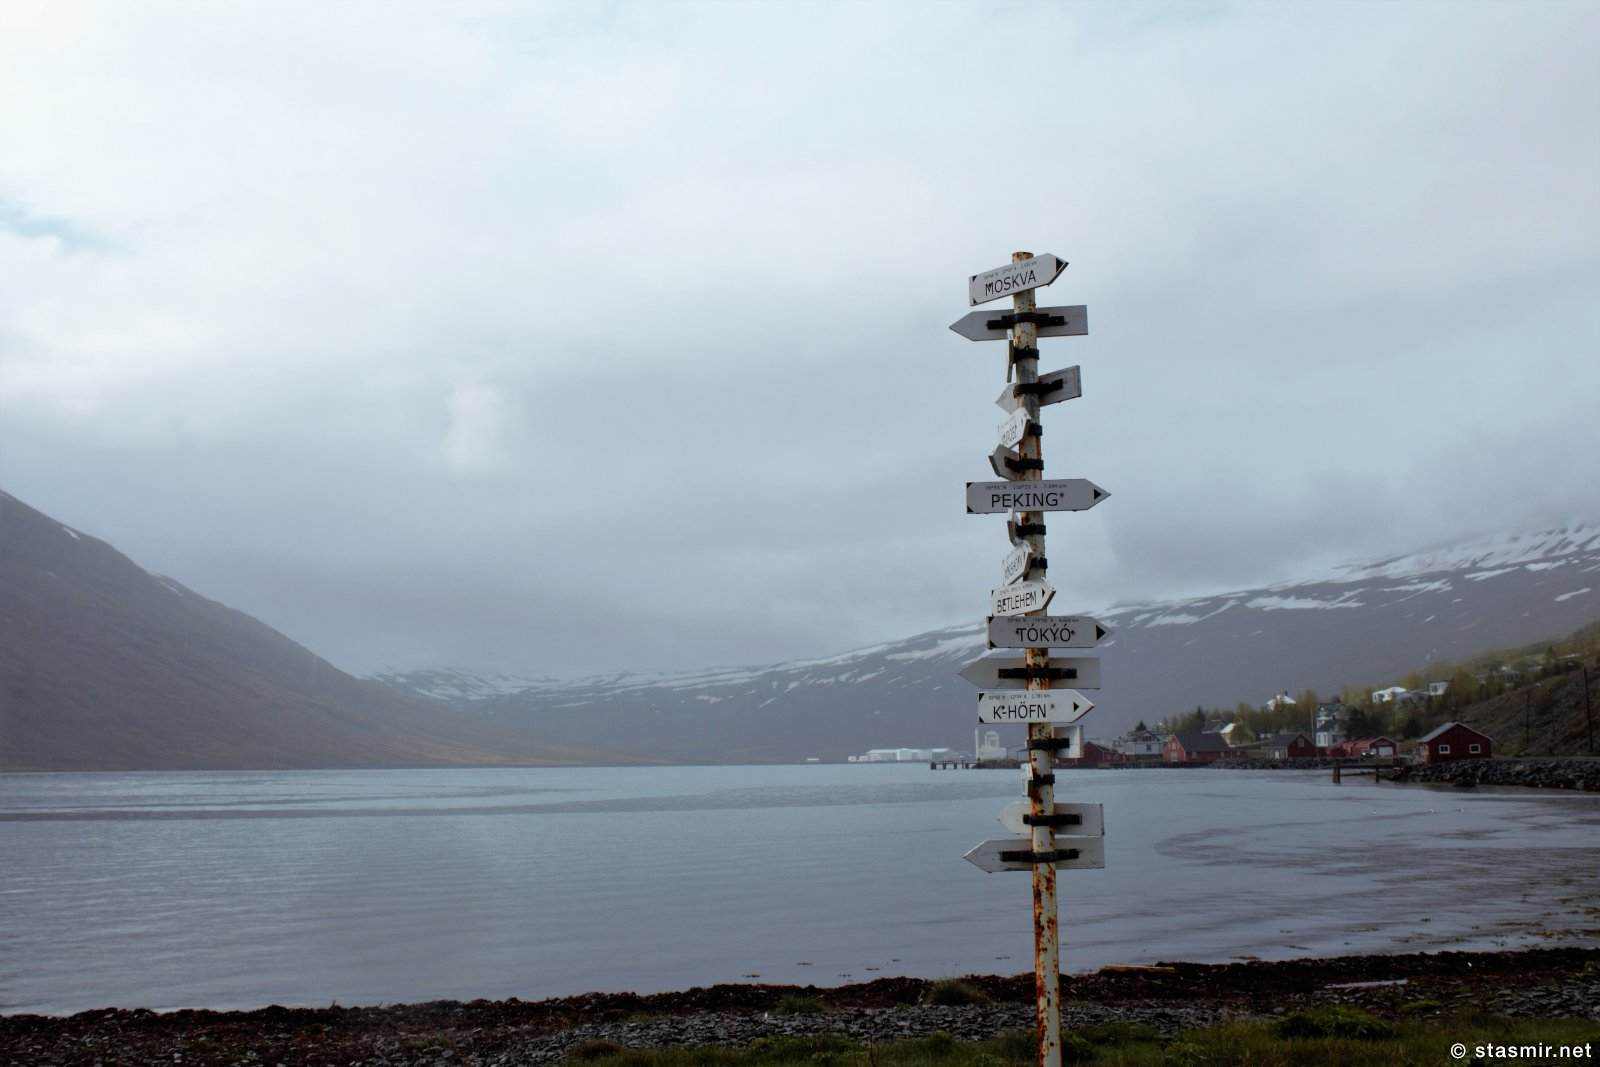 Mjóeyri - Знак с указателями там, где была китовая станция в Восточных Фьордах, фото Стасмир, photo Stasmir